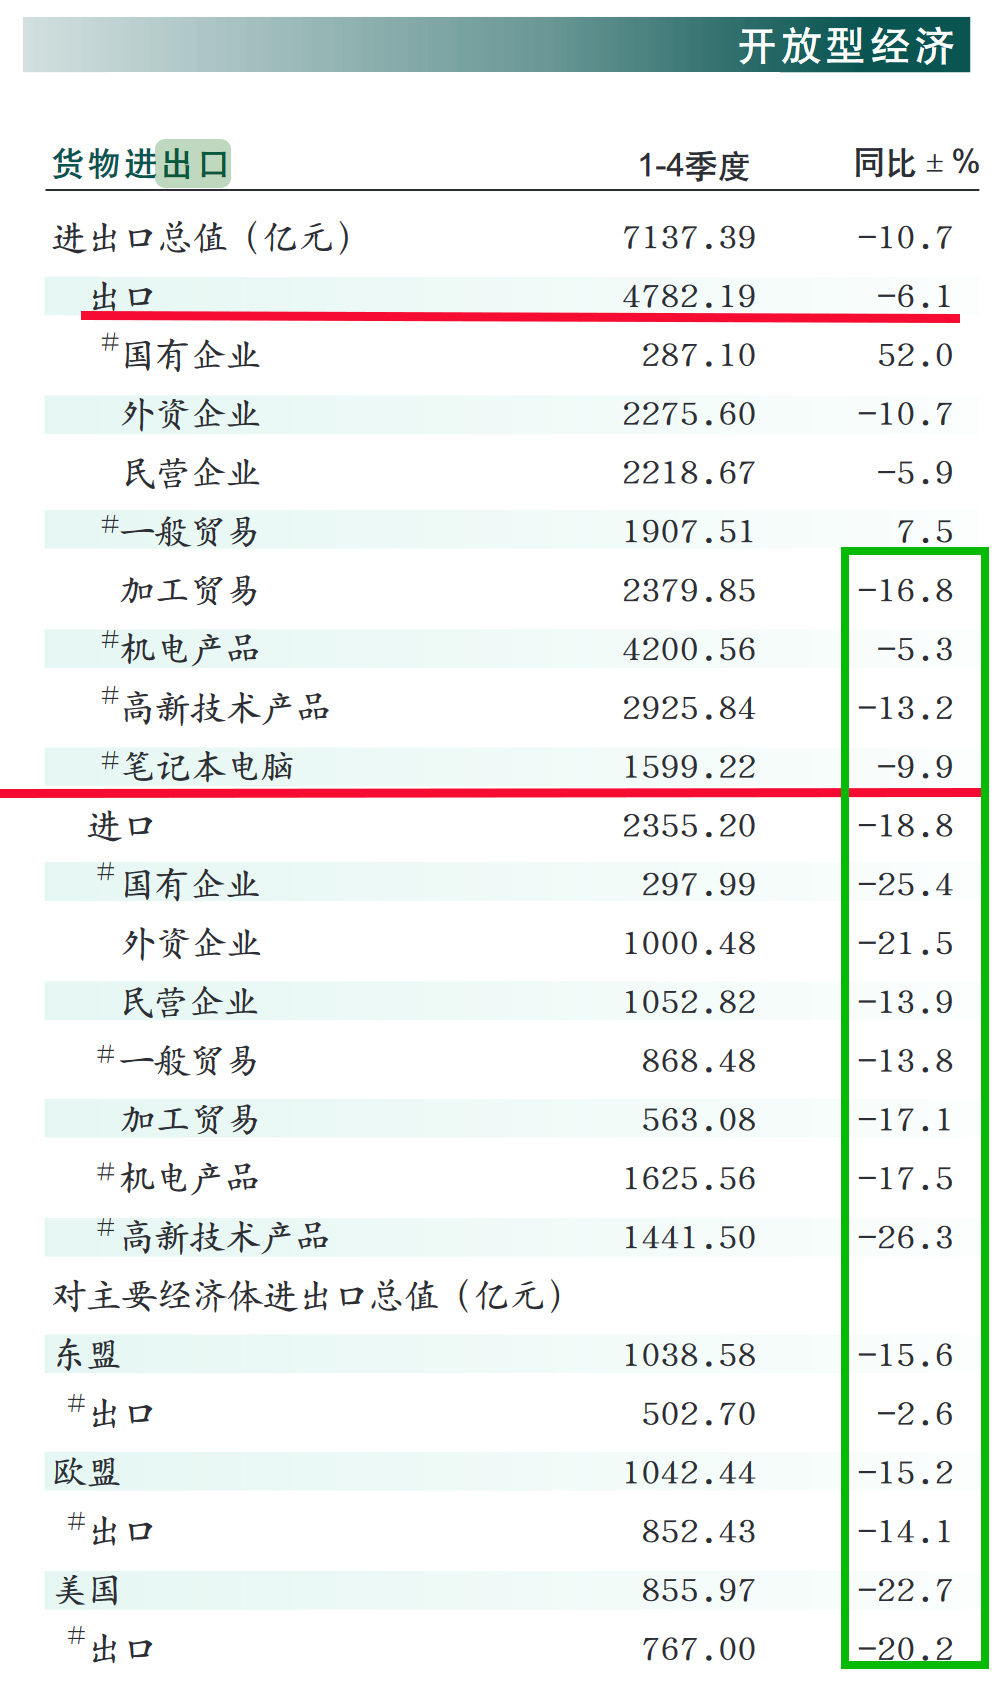 2023年重庆市出口下滑了6.1%，但“当家花旦”笔电的出口却下滑了9.9%，这是一个不好的信号。 此外，对美、对欧的出口，均出现了大幅下滑。截图来源：重庆市统计局